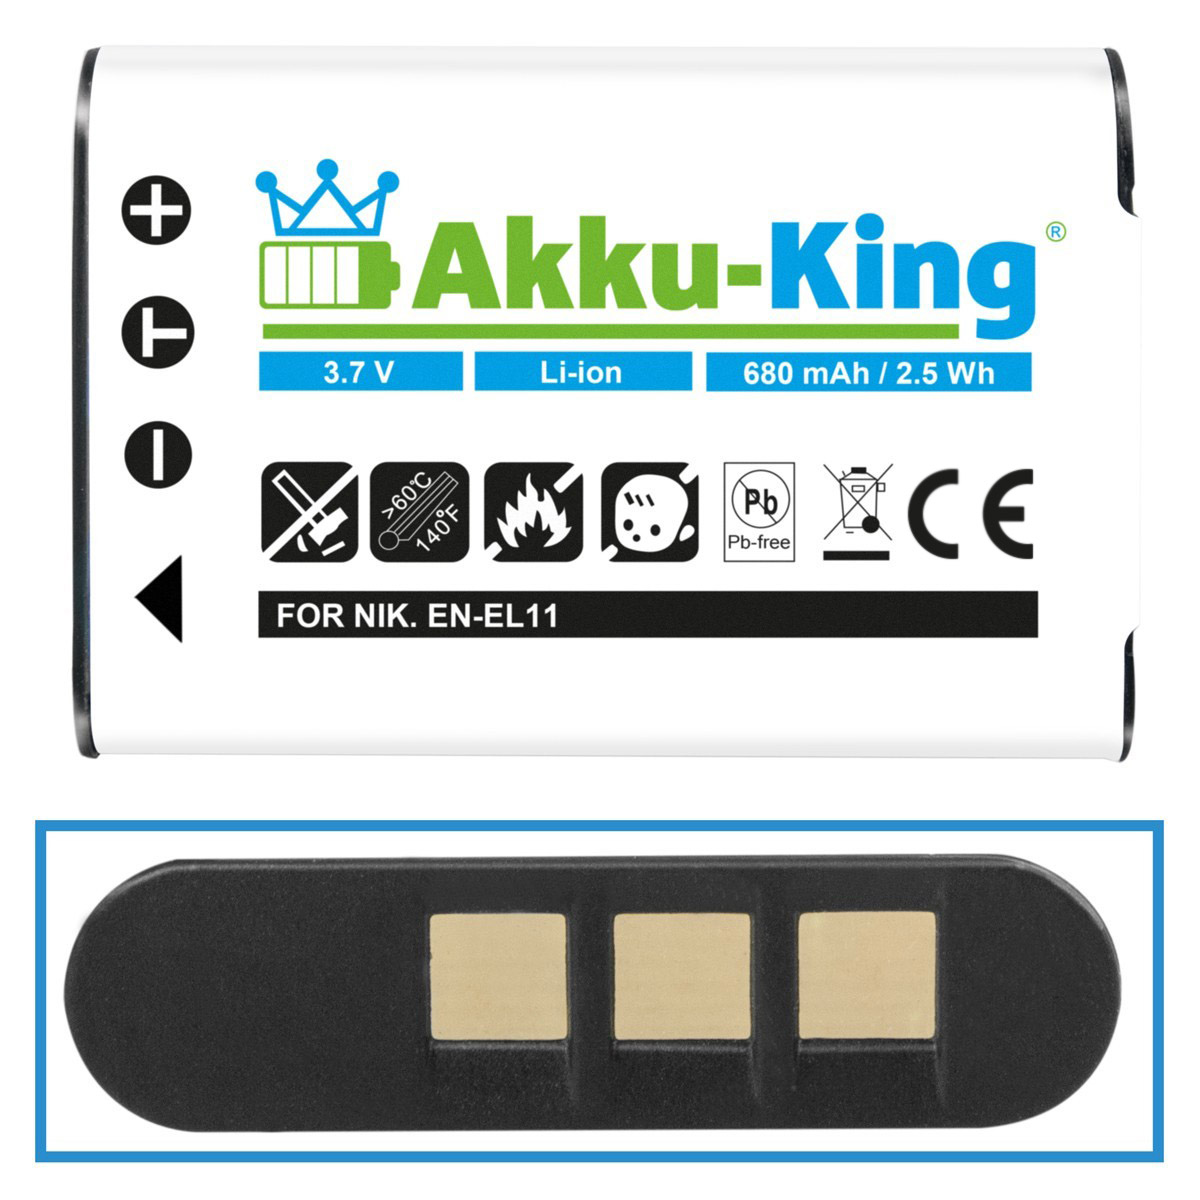 AKKU-KING 3.7 Akku Sanyo mit 680mAh Volt, DB-L70 kompatibel Li-Ion Kamera-Akku,